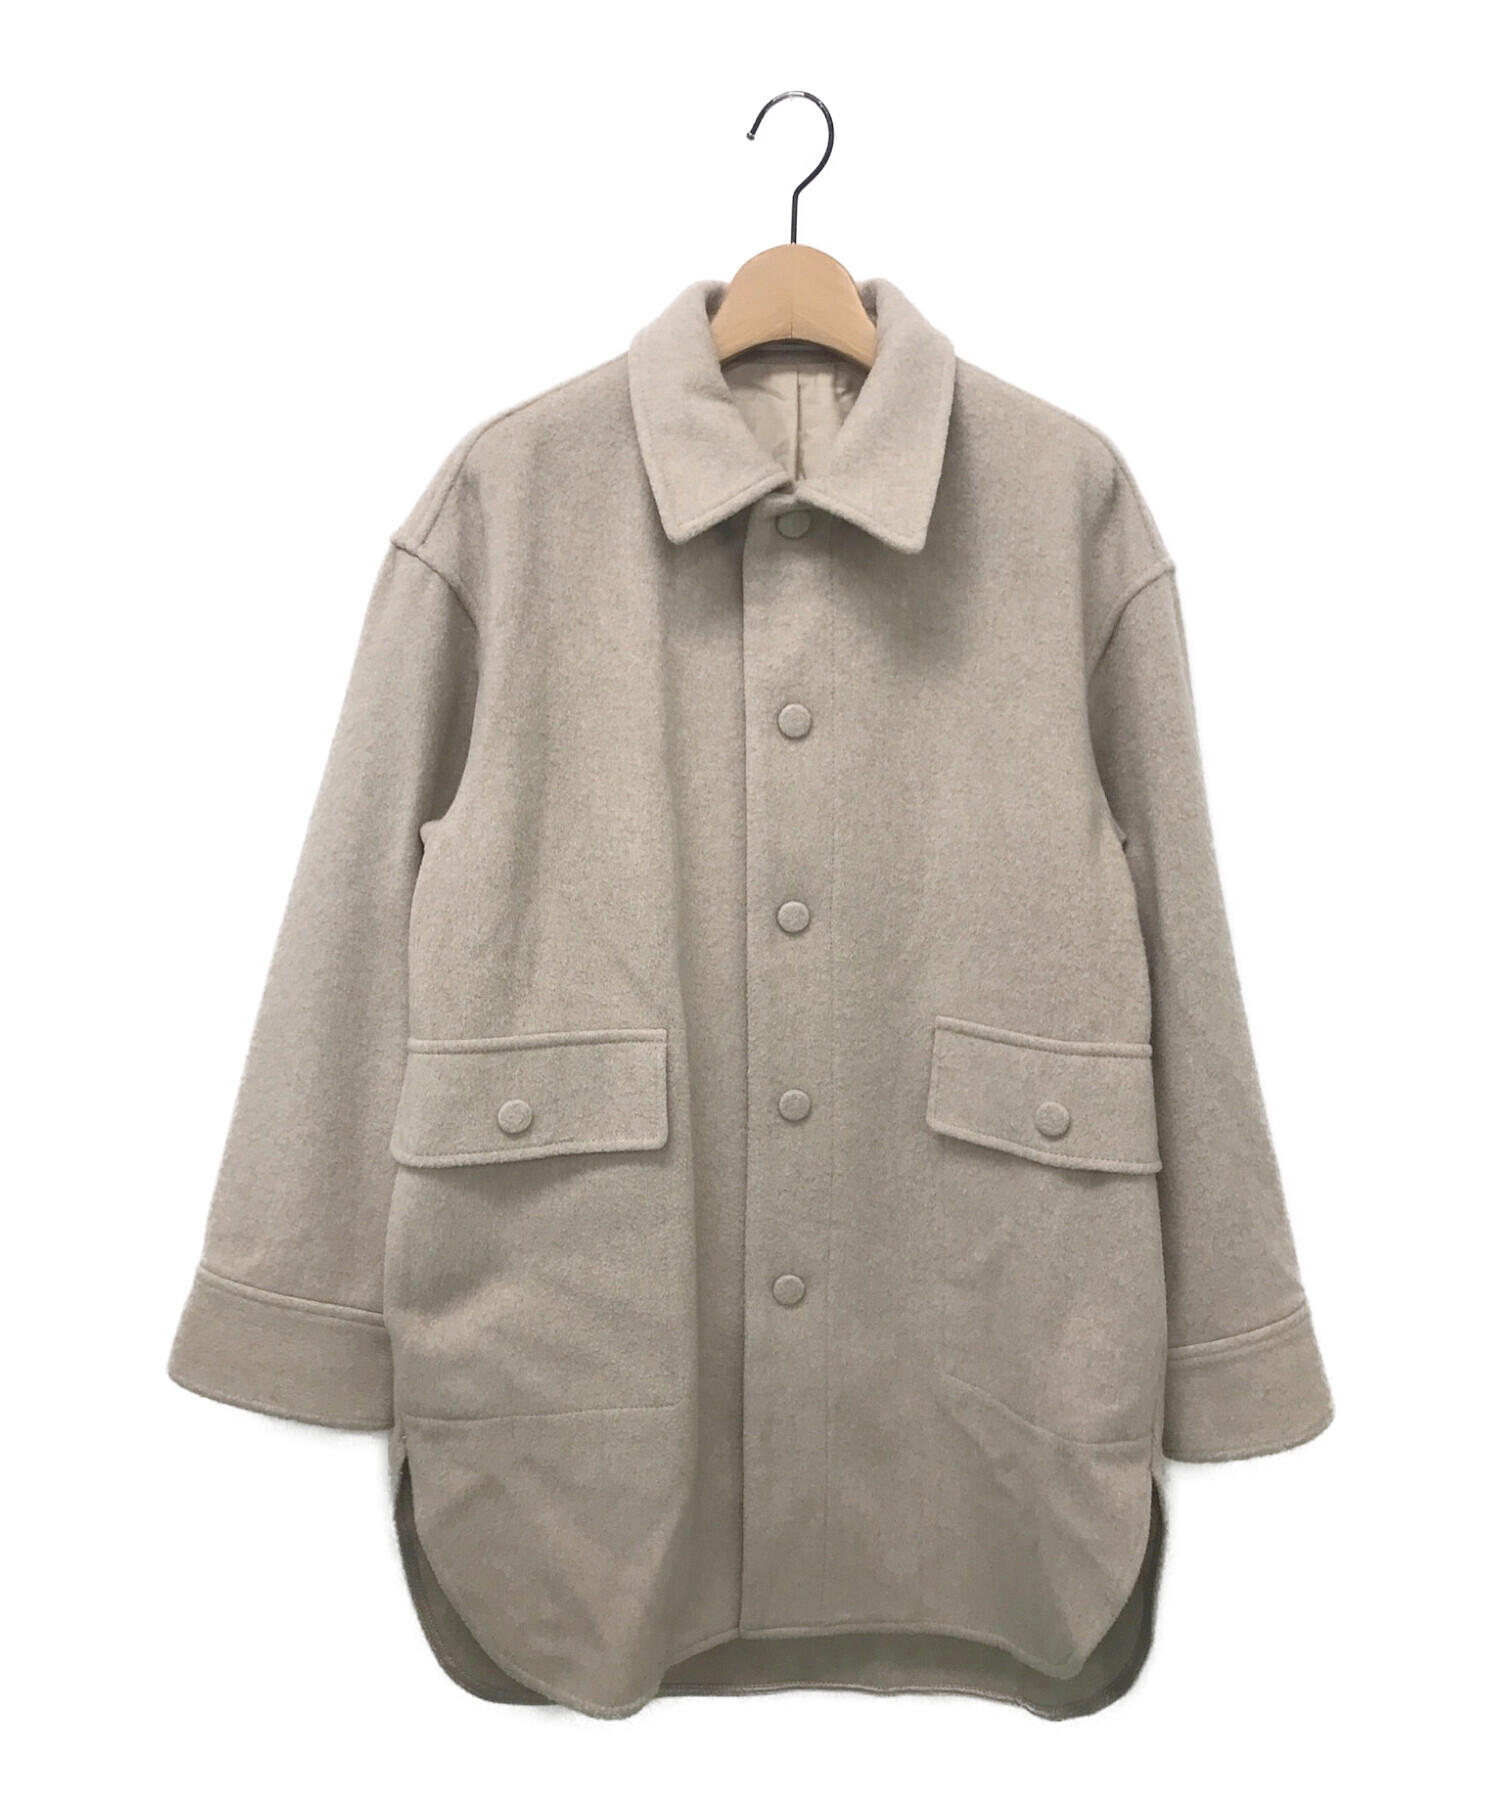 MACPHEE (マカフィー) ウールビーバー オーバーサイズドシャツジャケット ベージュ サイズ:36